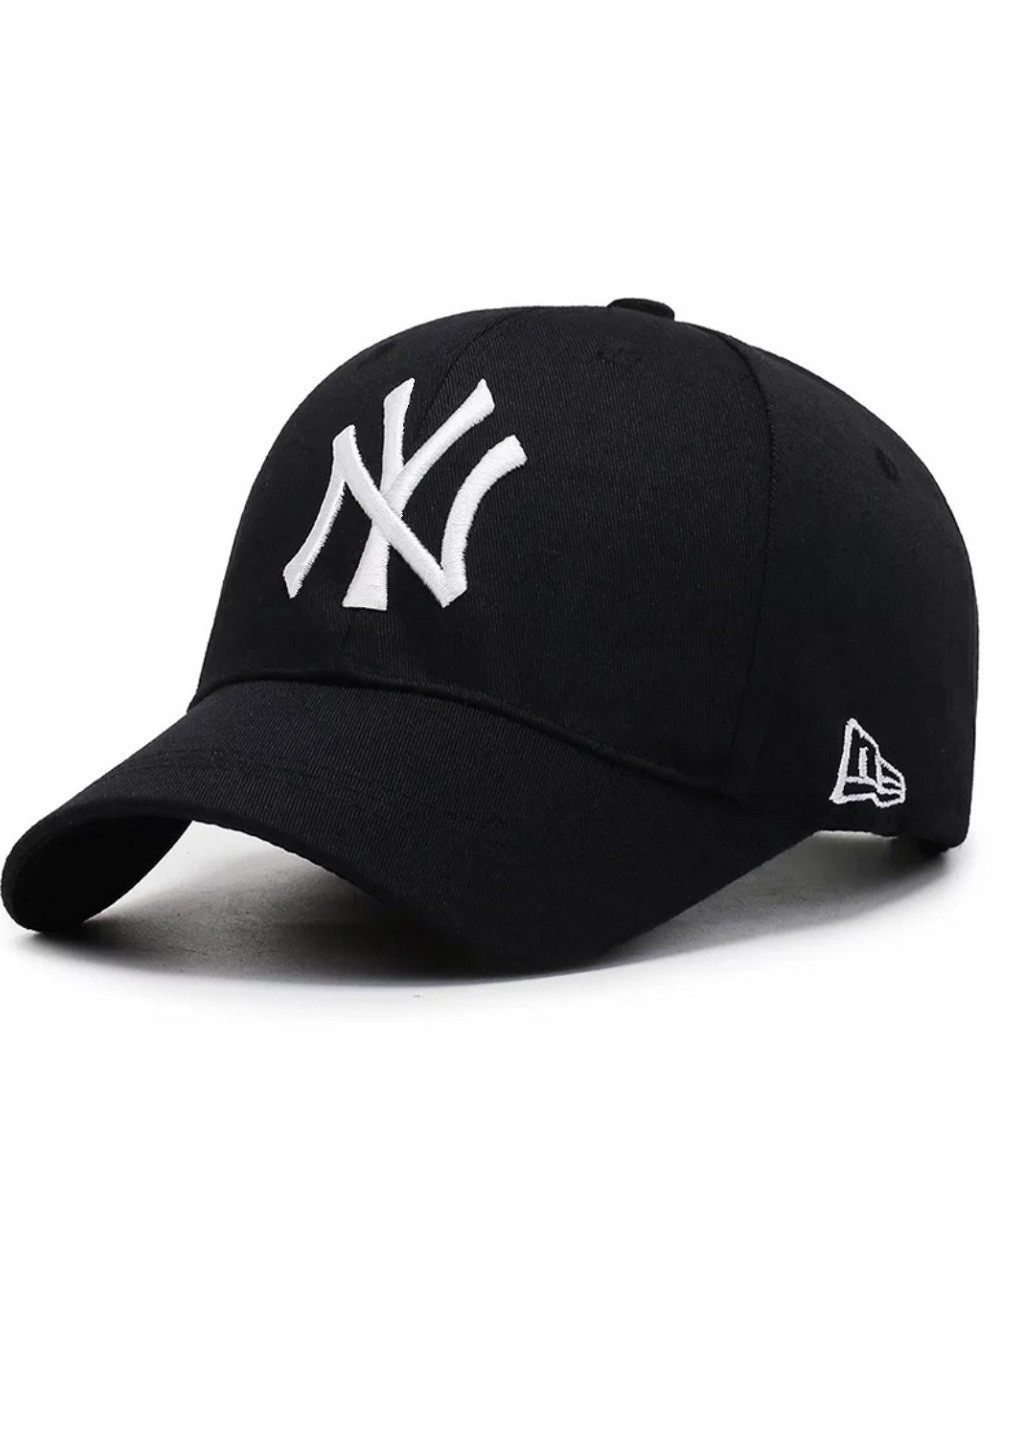 Кепка бейсболка NY Нью-Йорк (New York) New Era унісекс логотип Білий NoName бейсболка однотонна чорно-біла кежуал